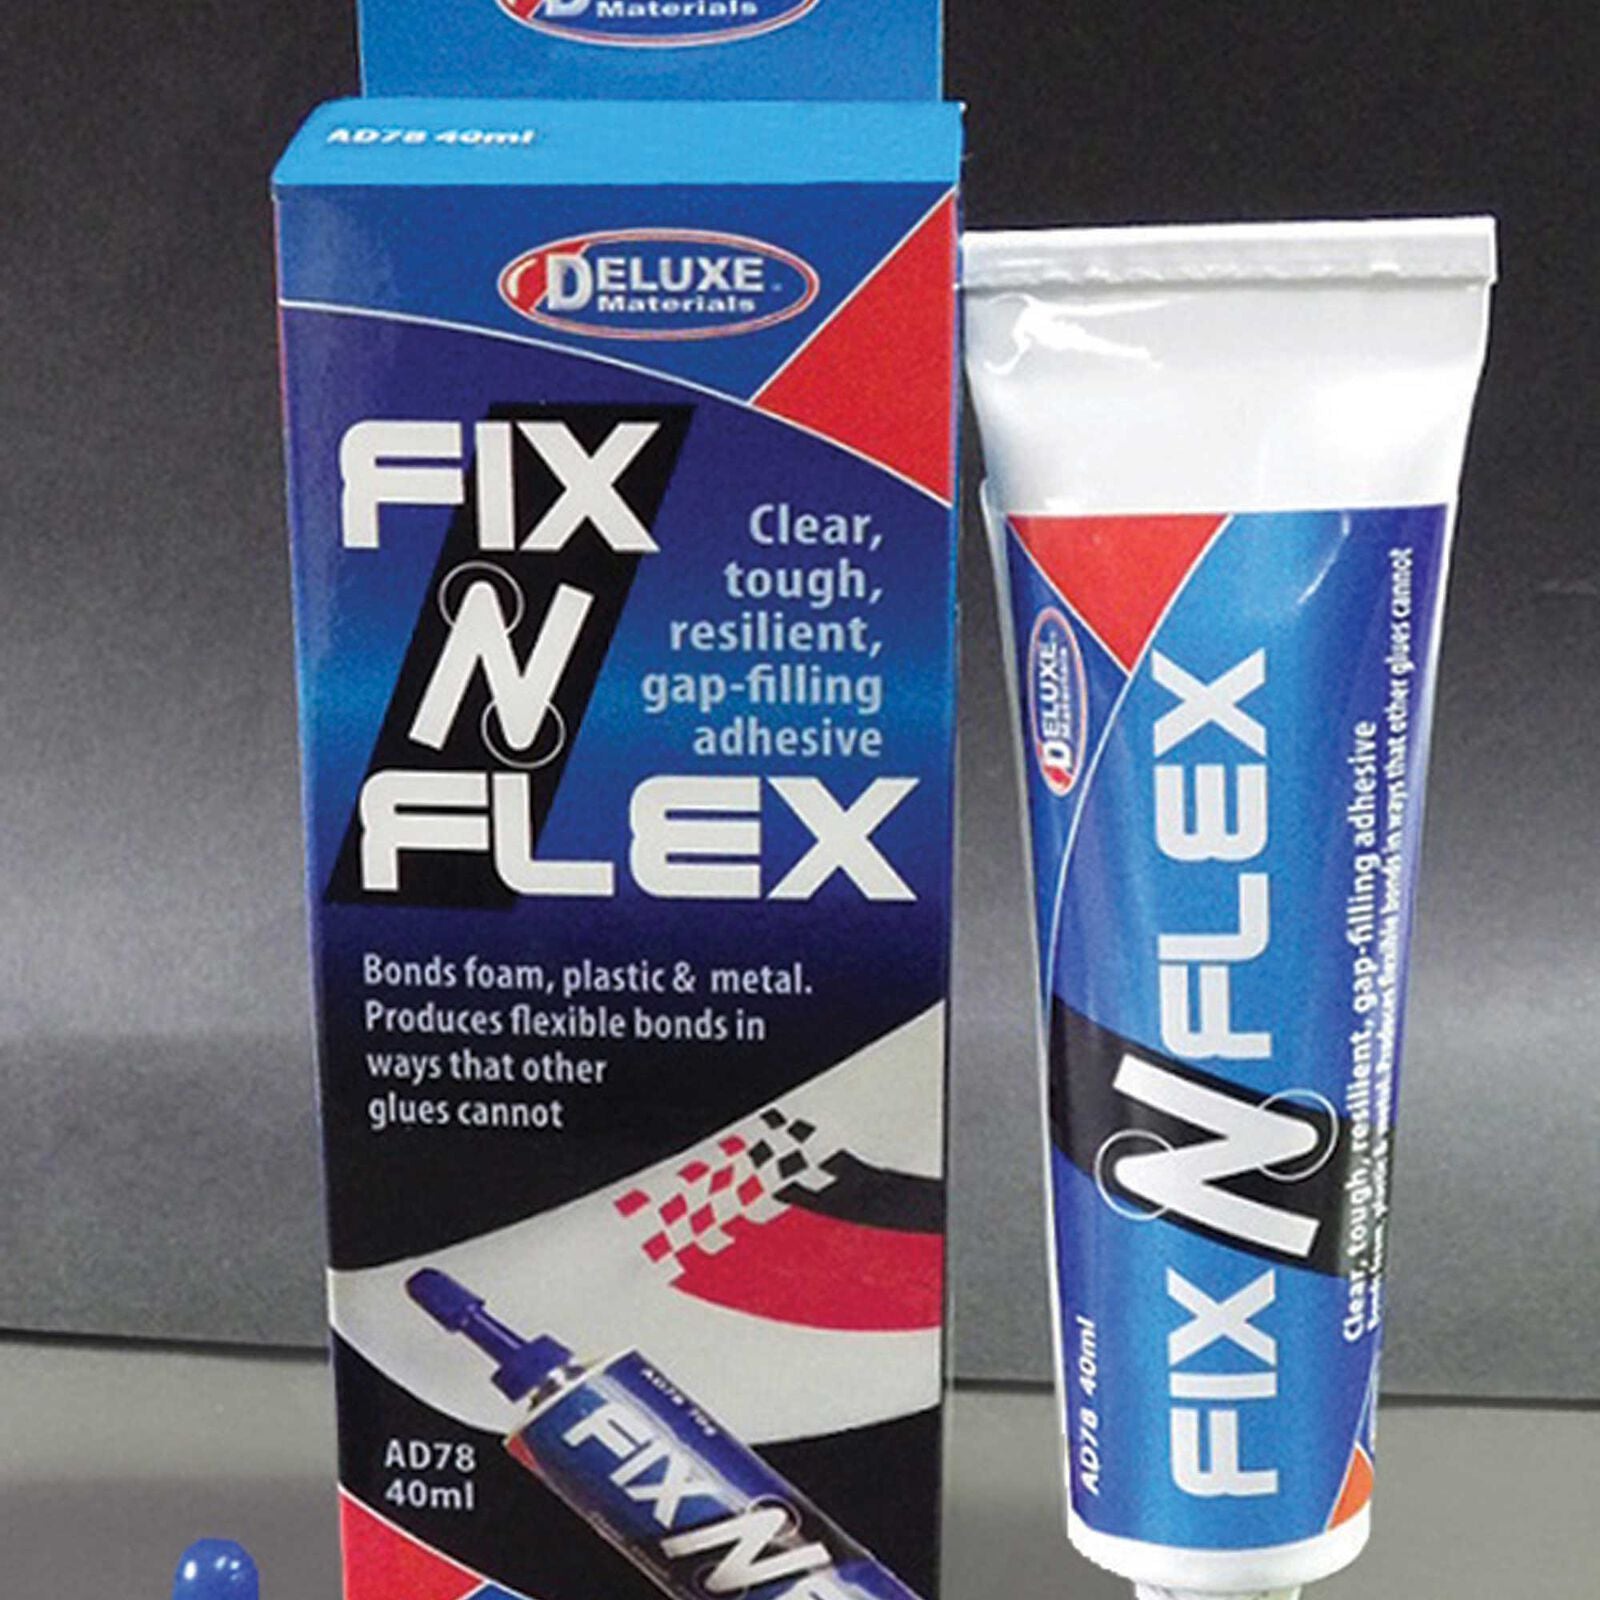 DELUXE MATERIALS AD78 Fix 'n' Flex Adhesive Filler